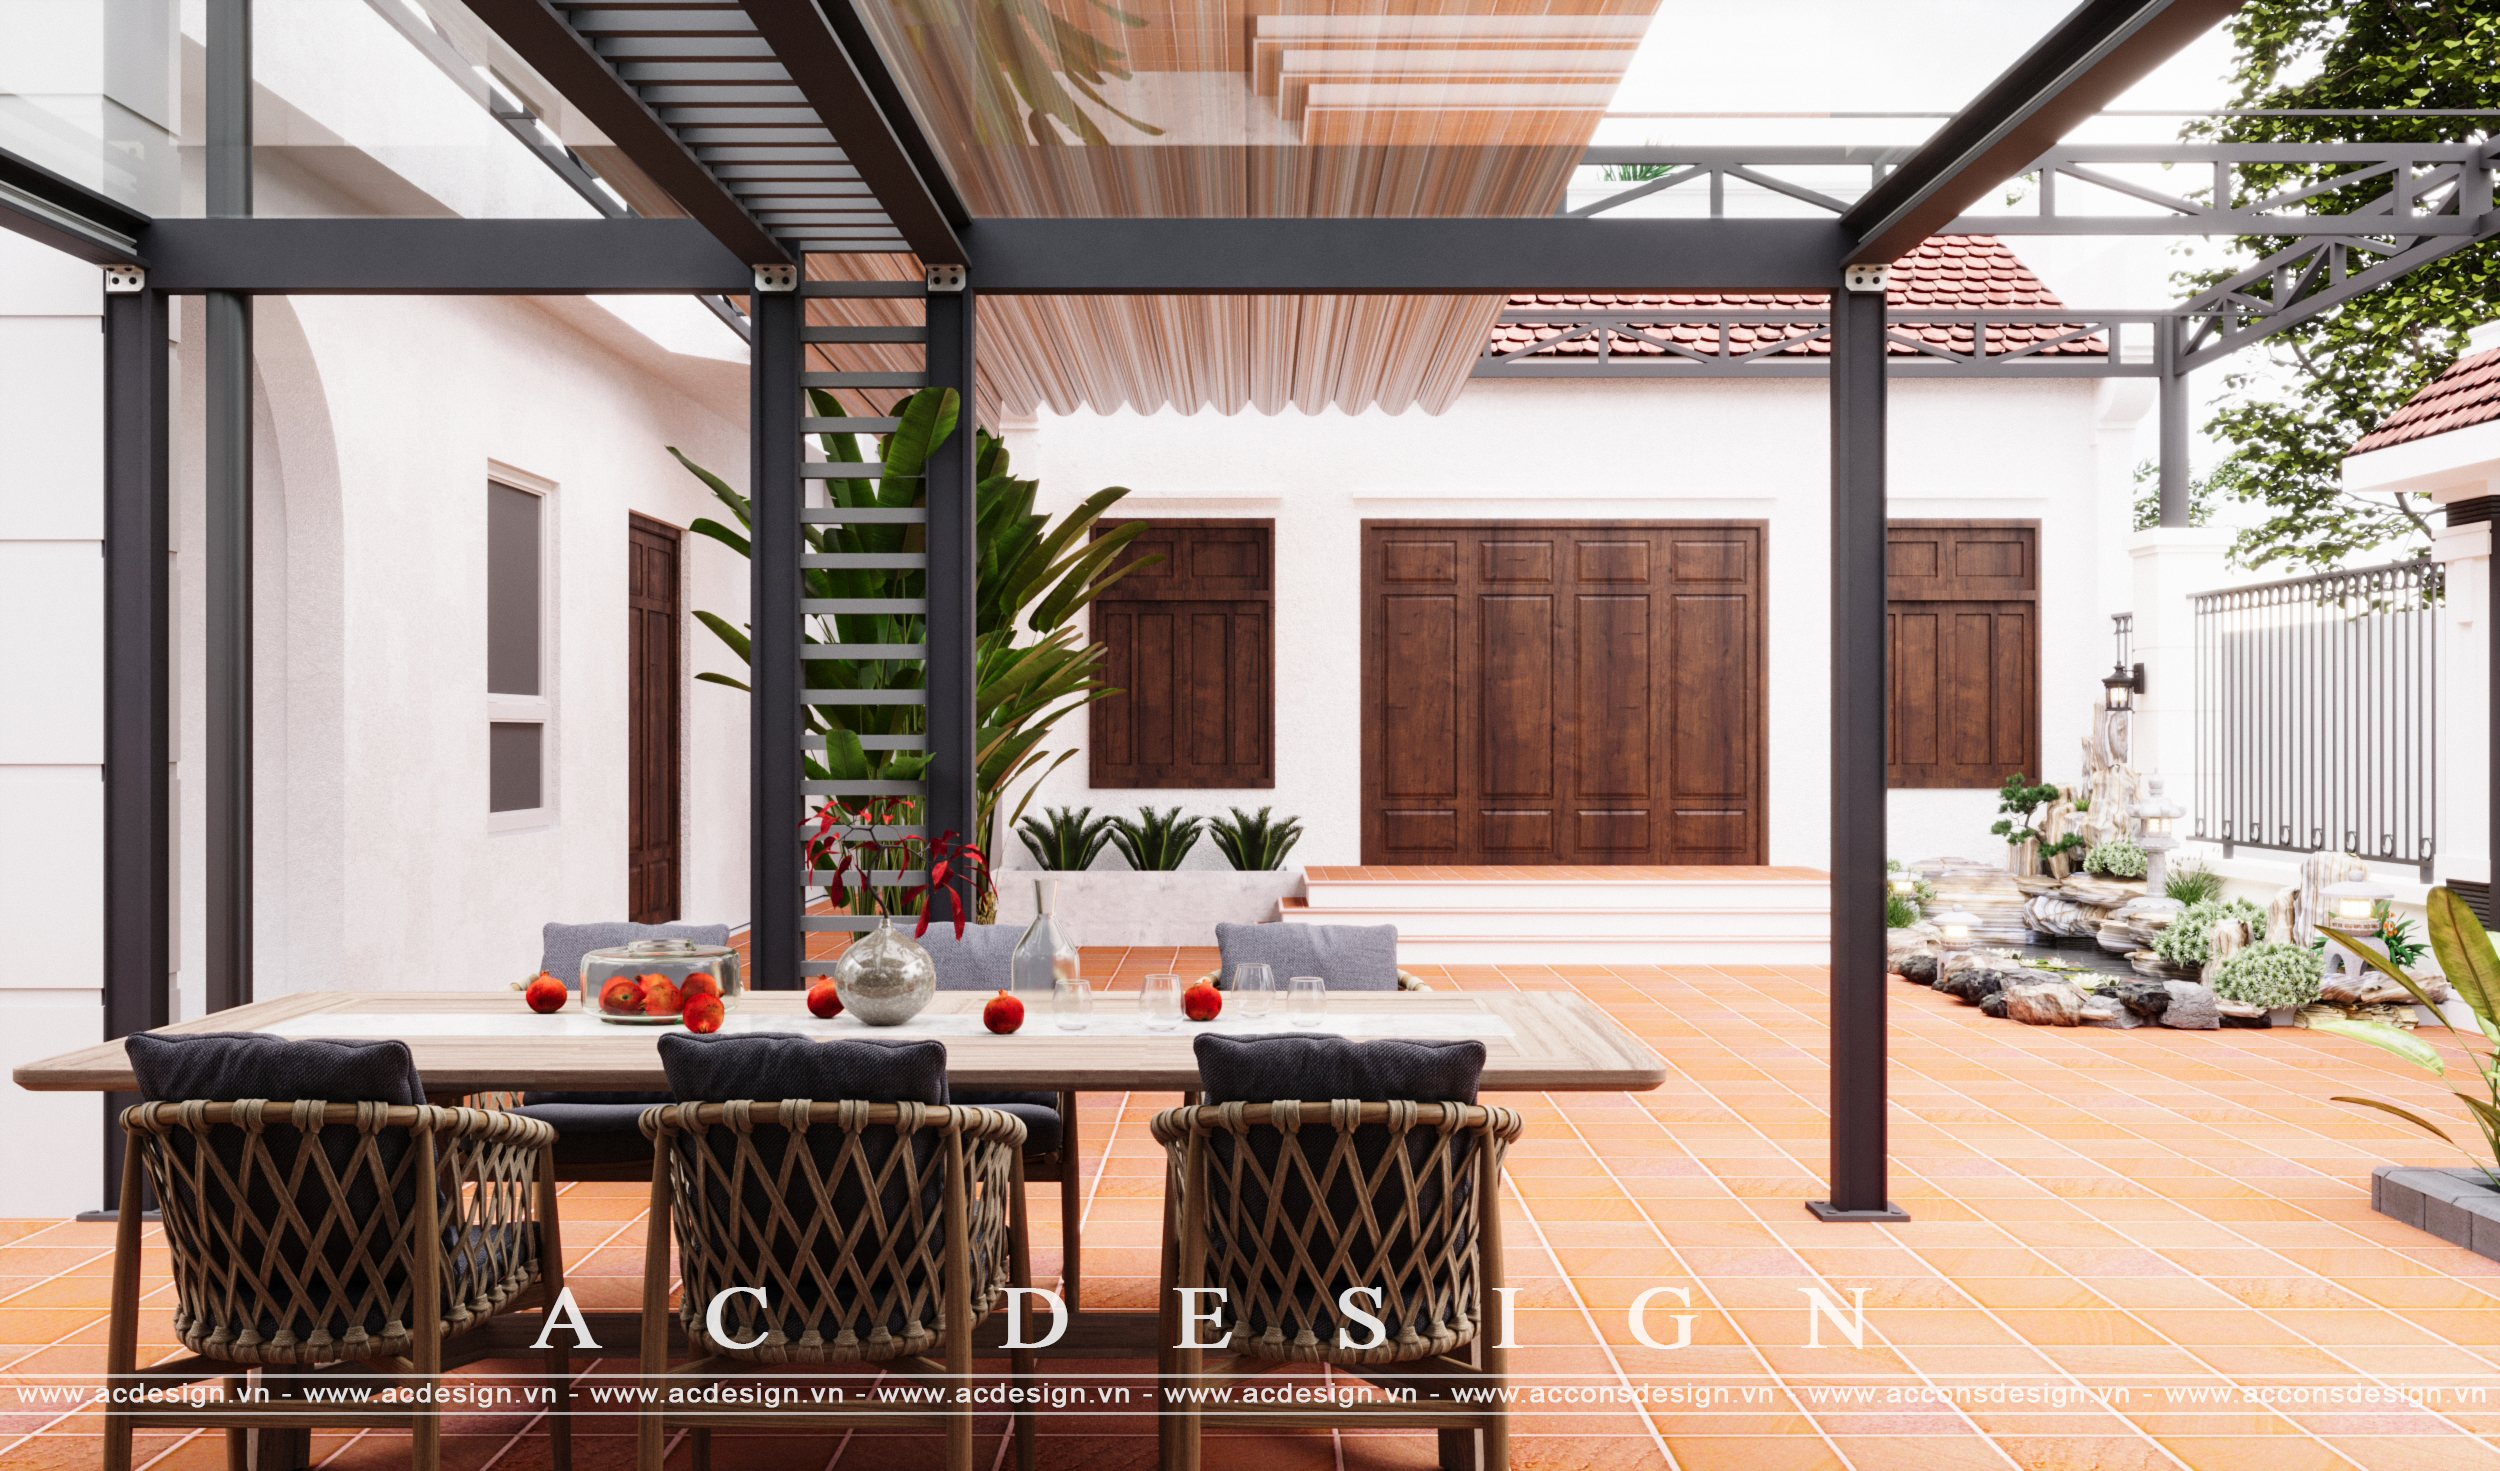 Thiết kế Nhà tại Bắc Ninh Thiết kế sân vườn 1678702373 0